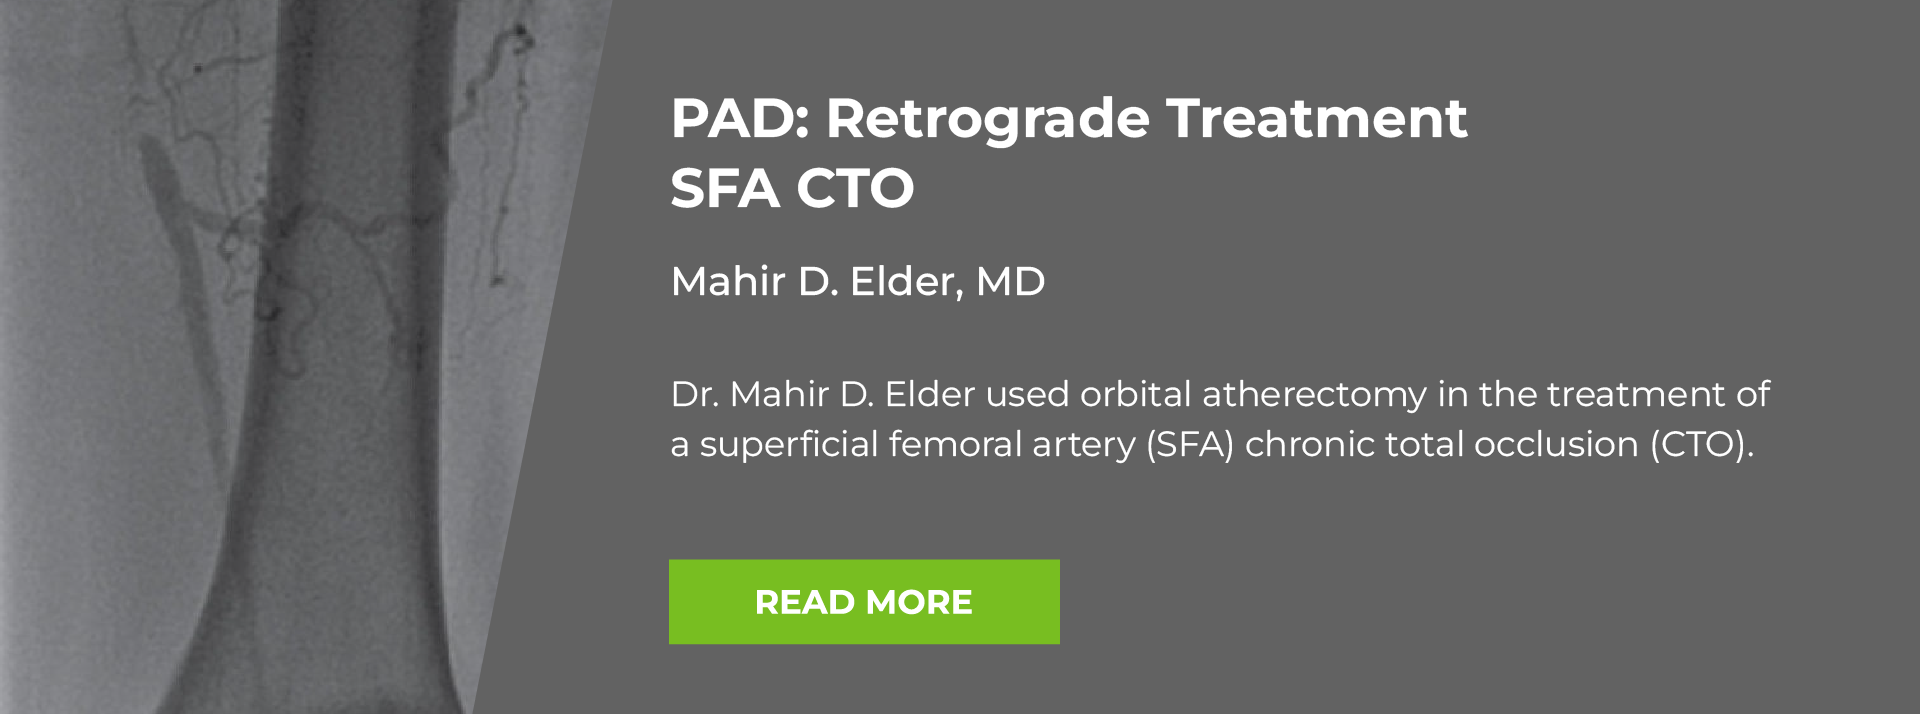 P A D Case Study: Retrograde treatment S F A C T O